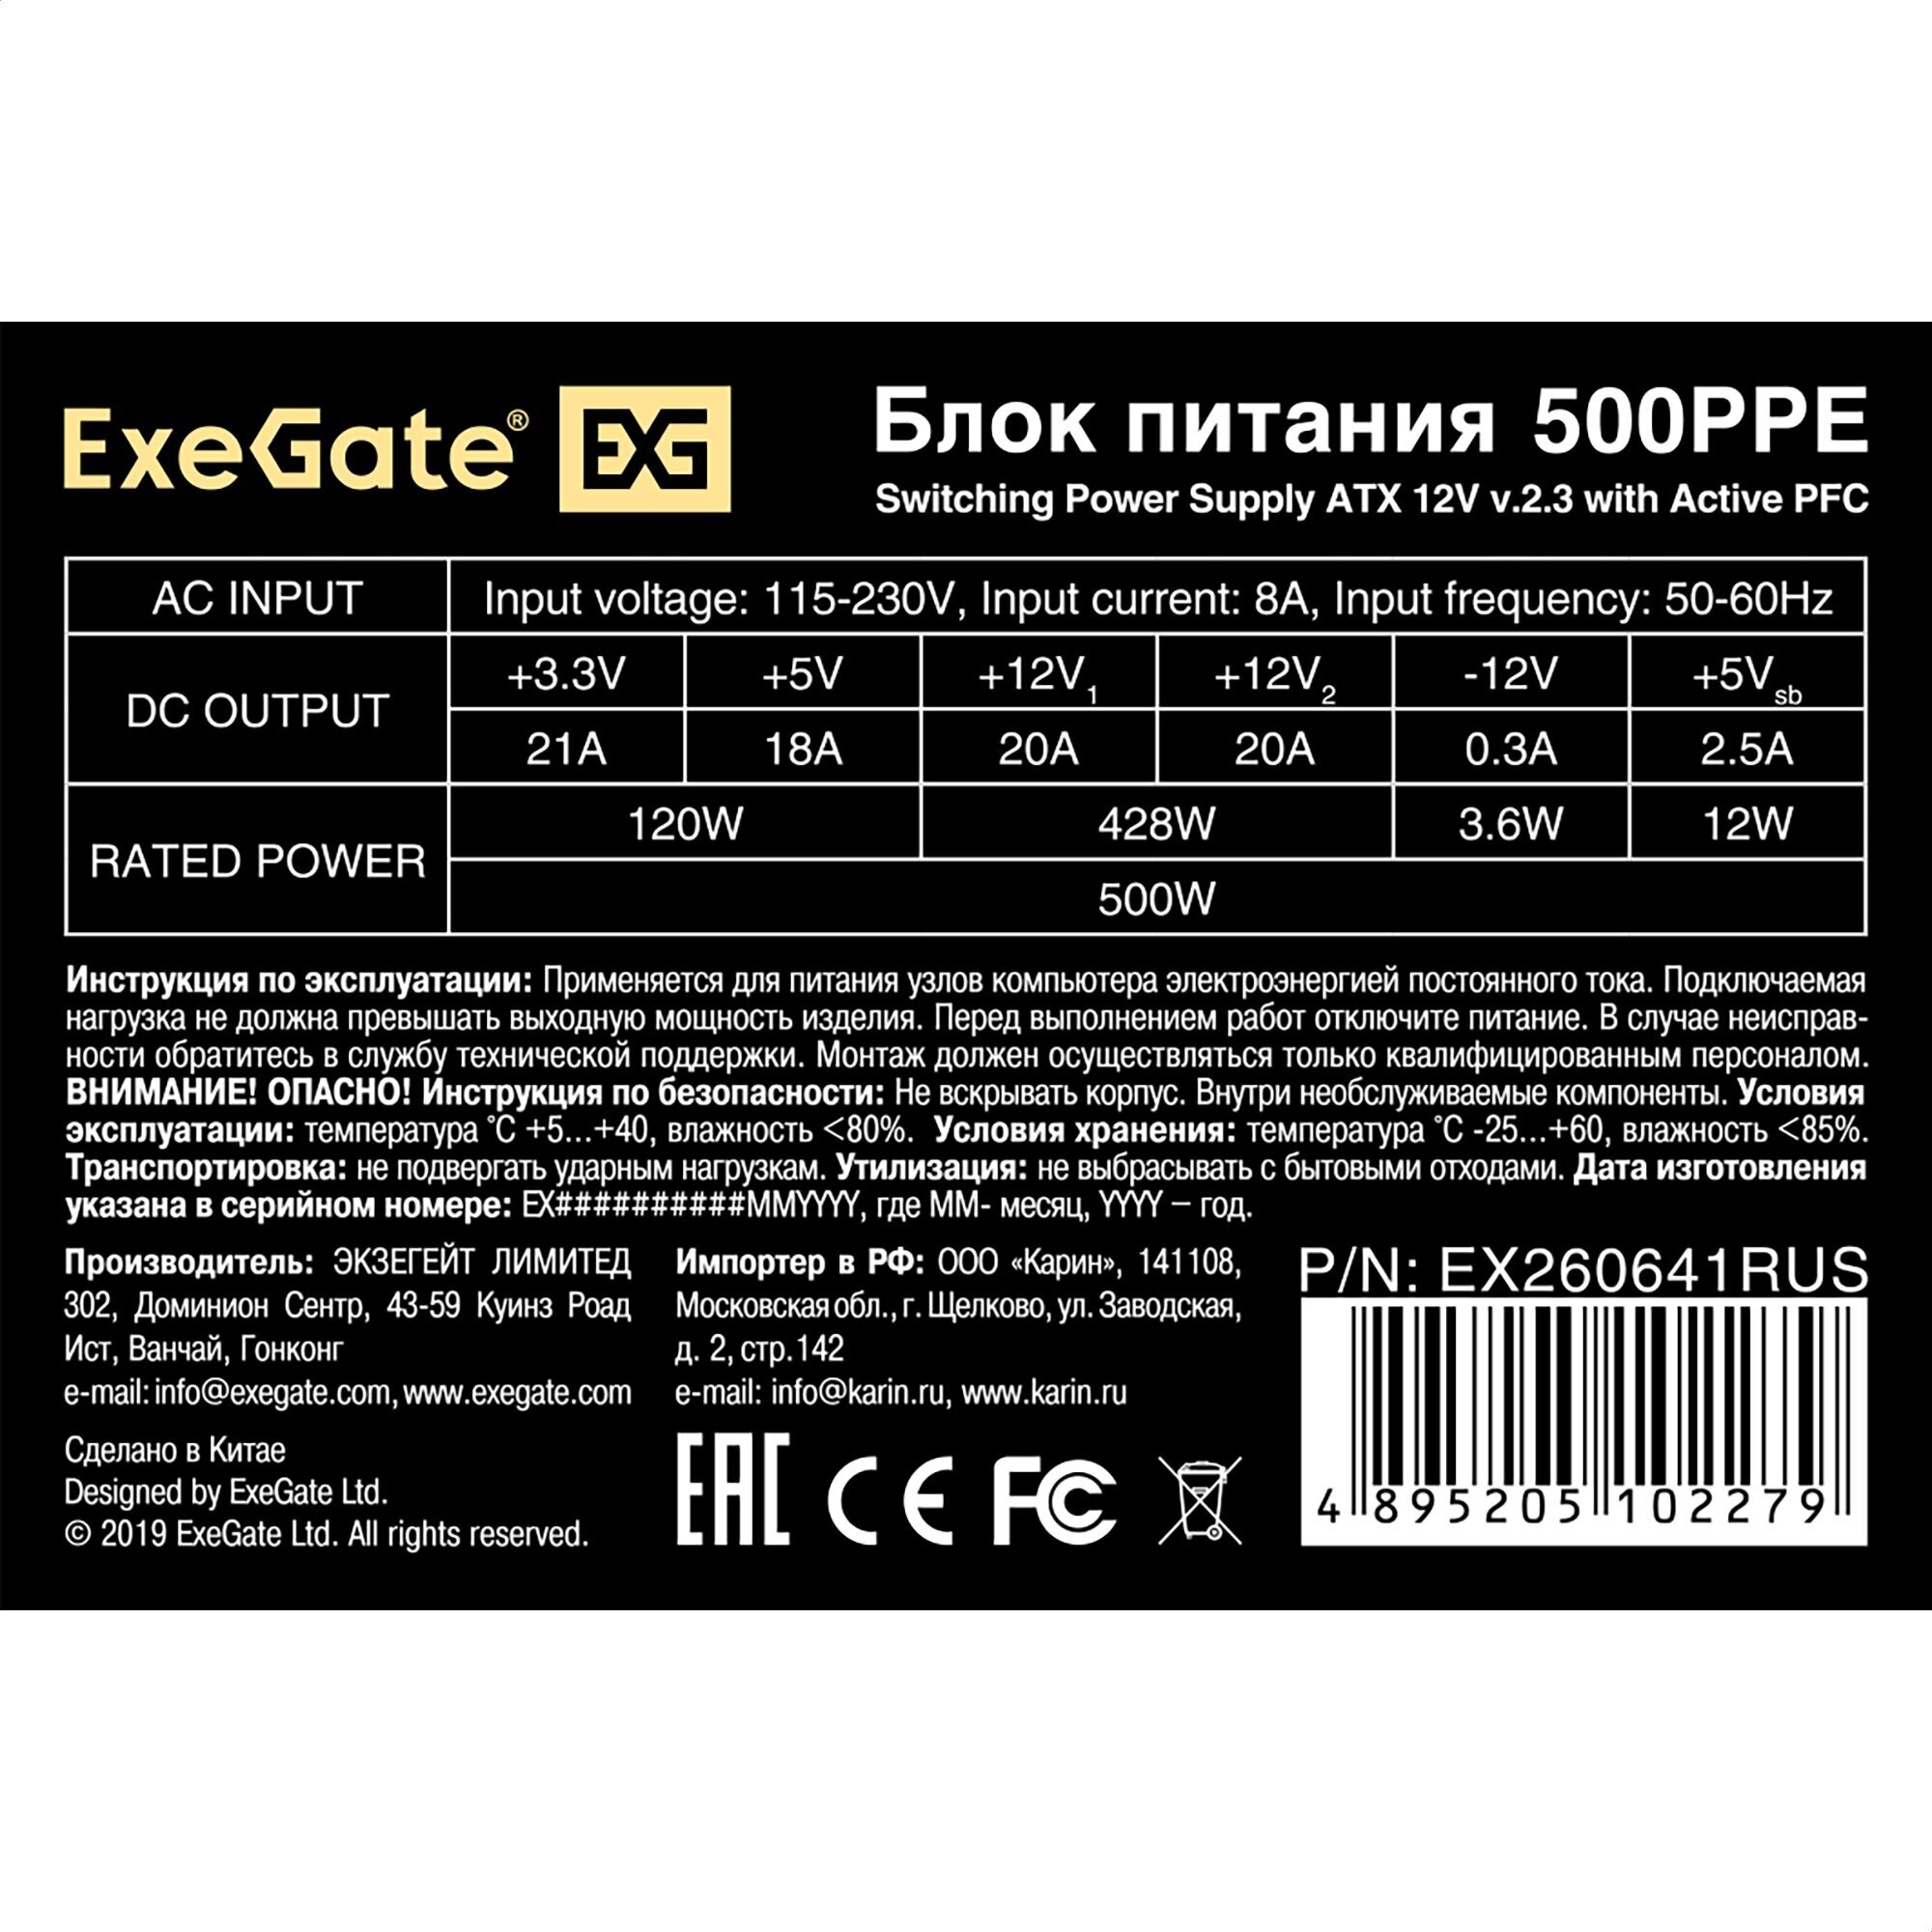 Блок питания ExeGate 500PPE 500W с защитой от выдергивания черный - фото №7